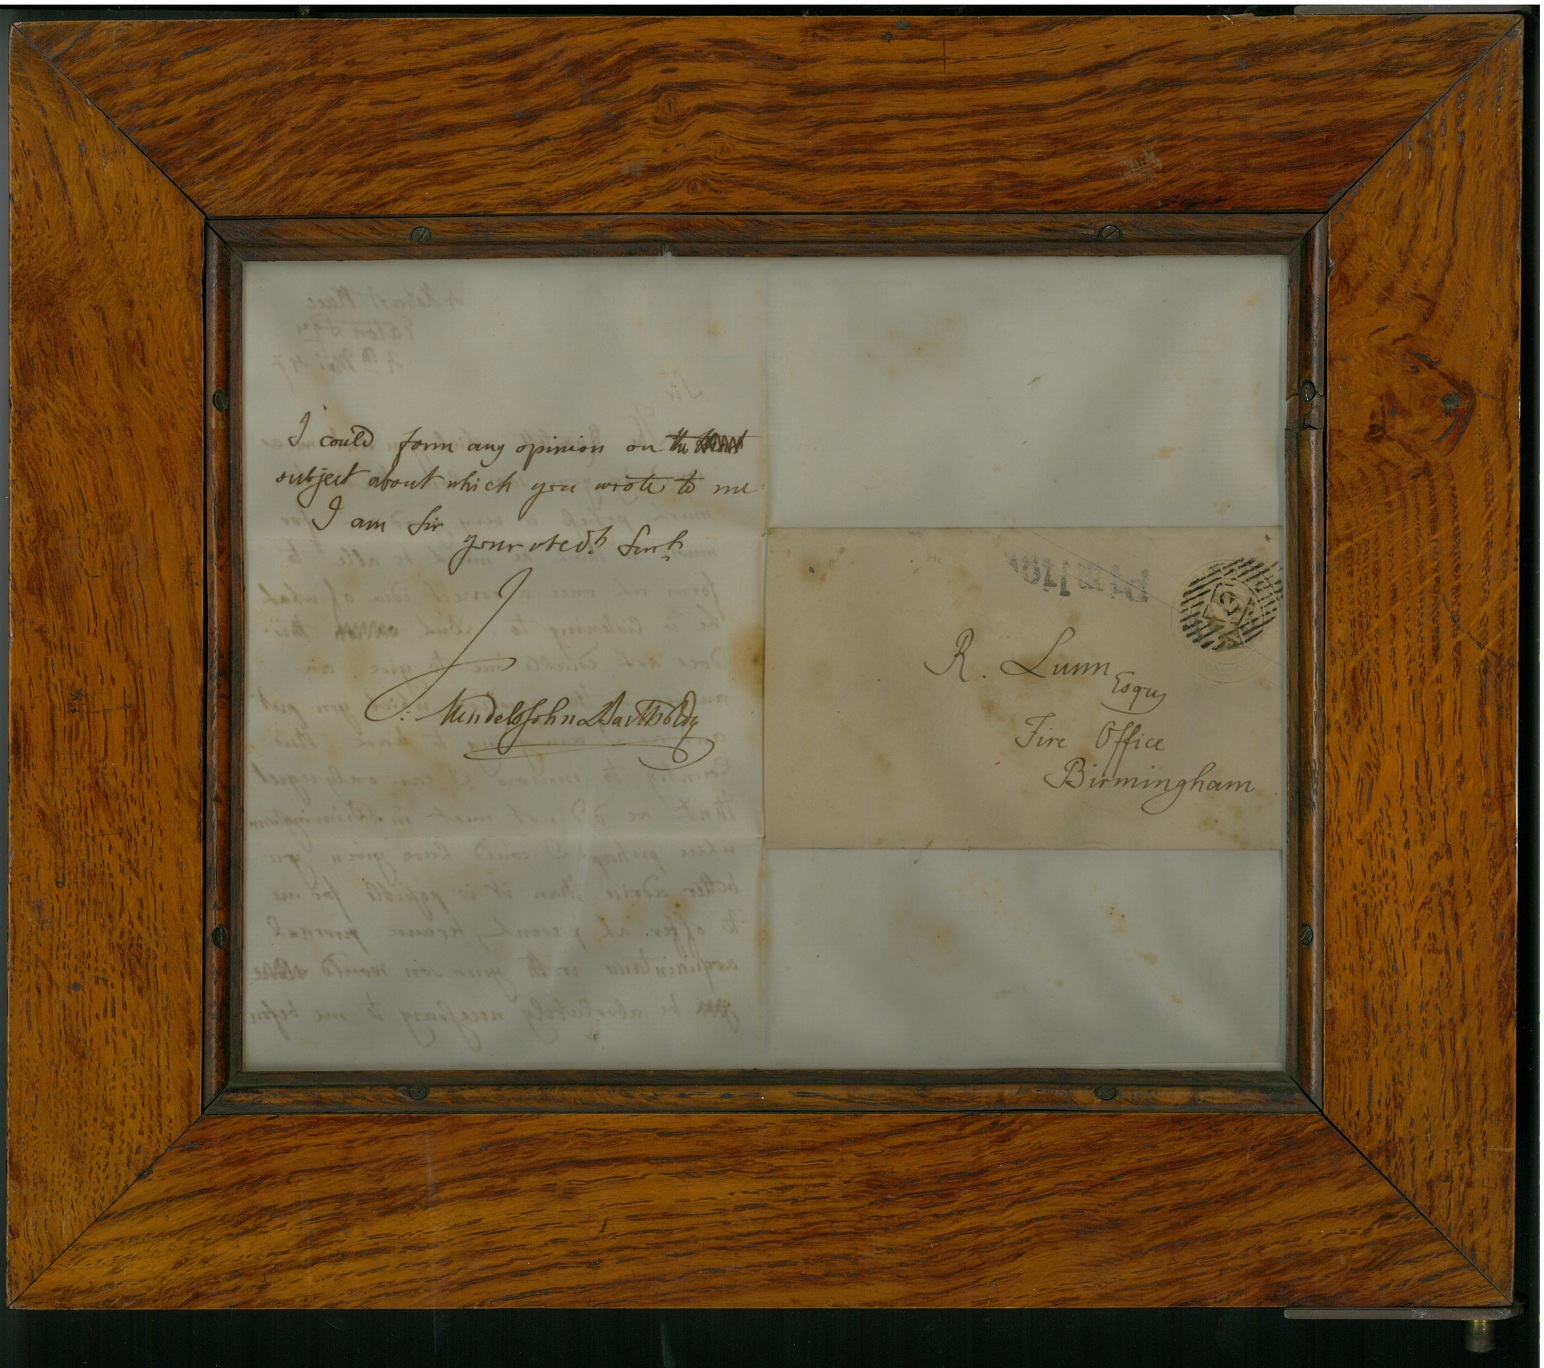 Mendelssohn's letter